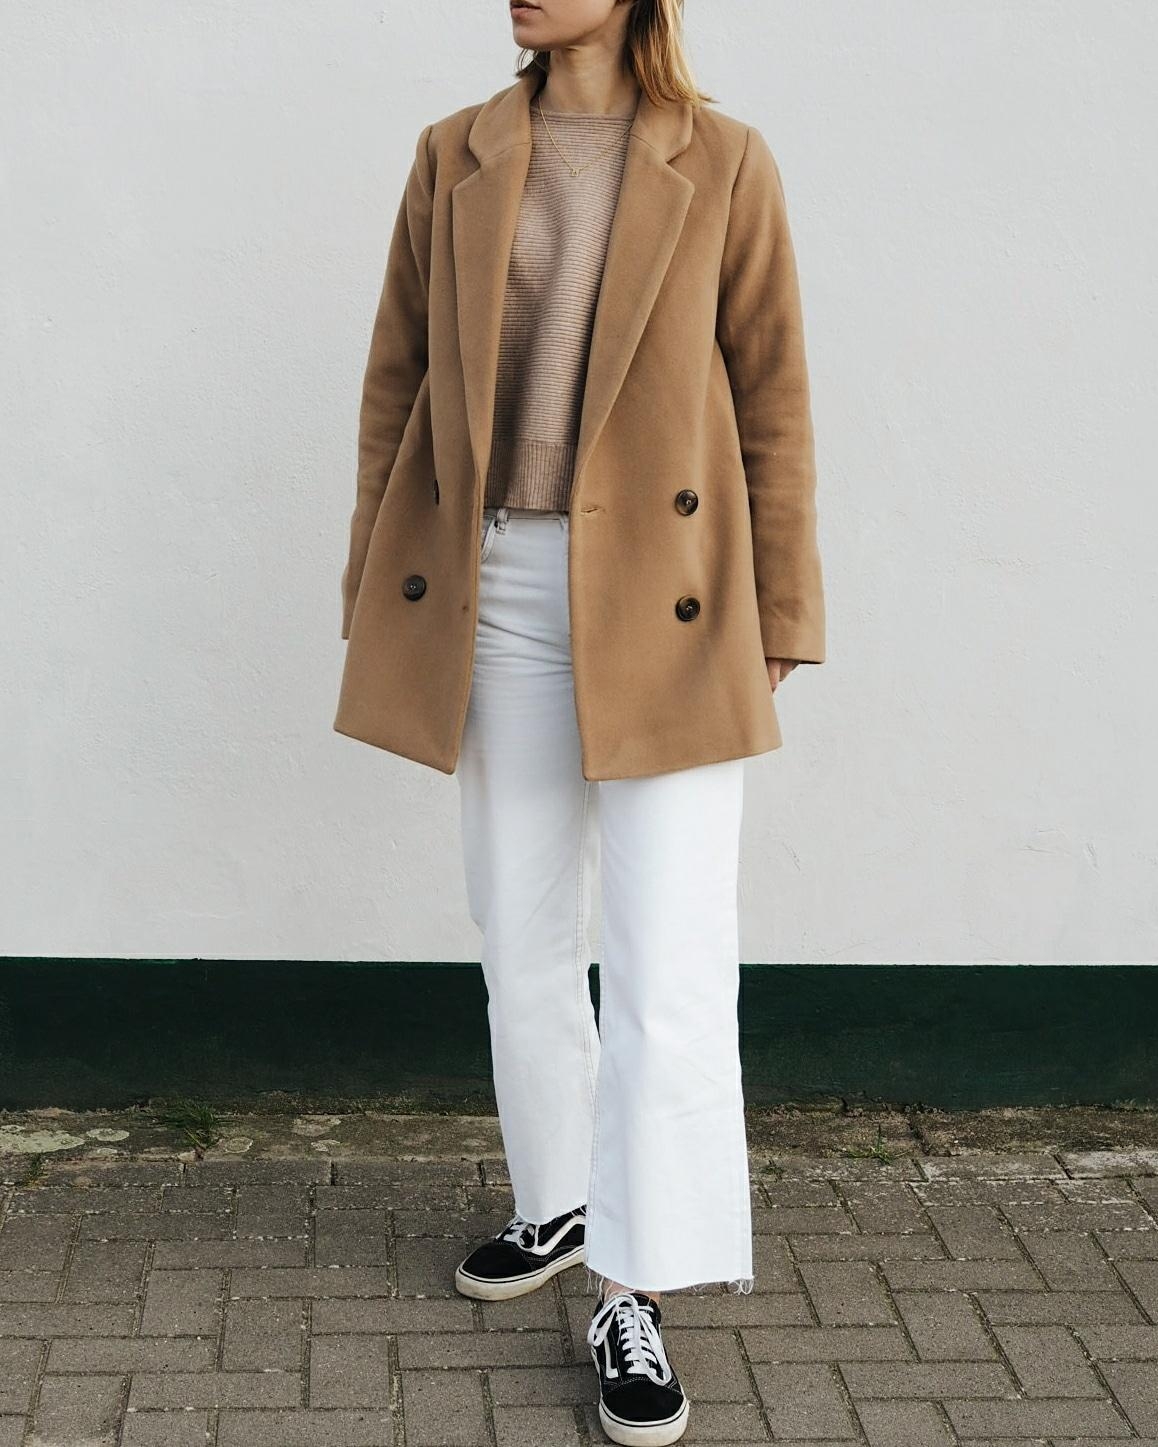 Weiße cropped jeans & camel Blazer 🗯️🐪 #whitedenim #fashion #blazer #neutrals #fashioncrush 